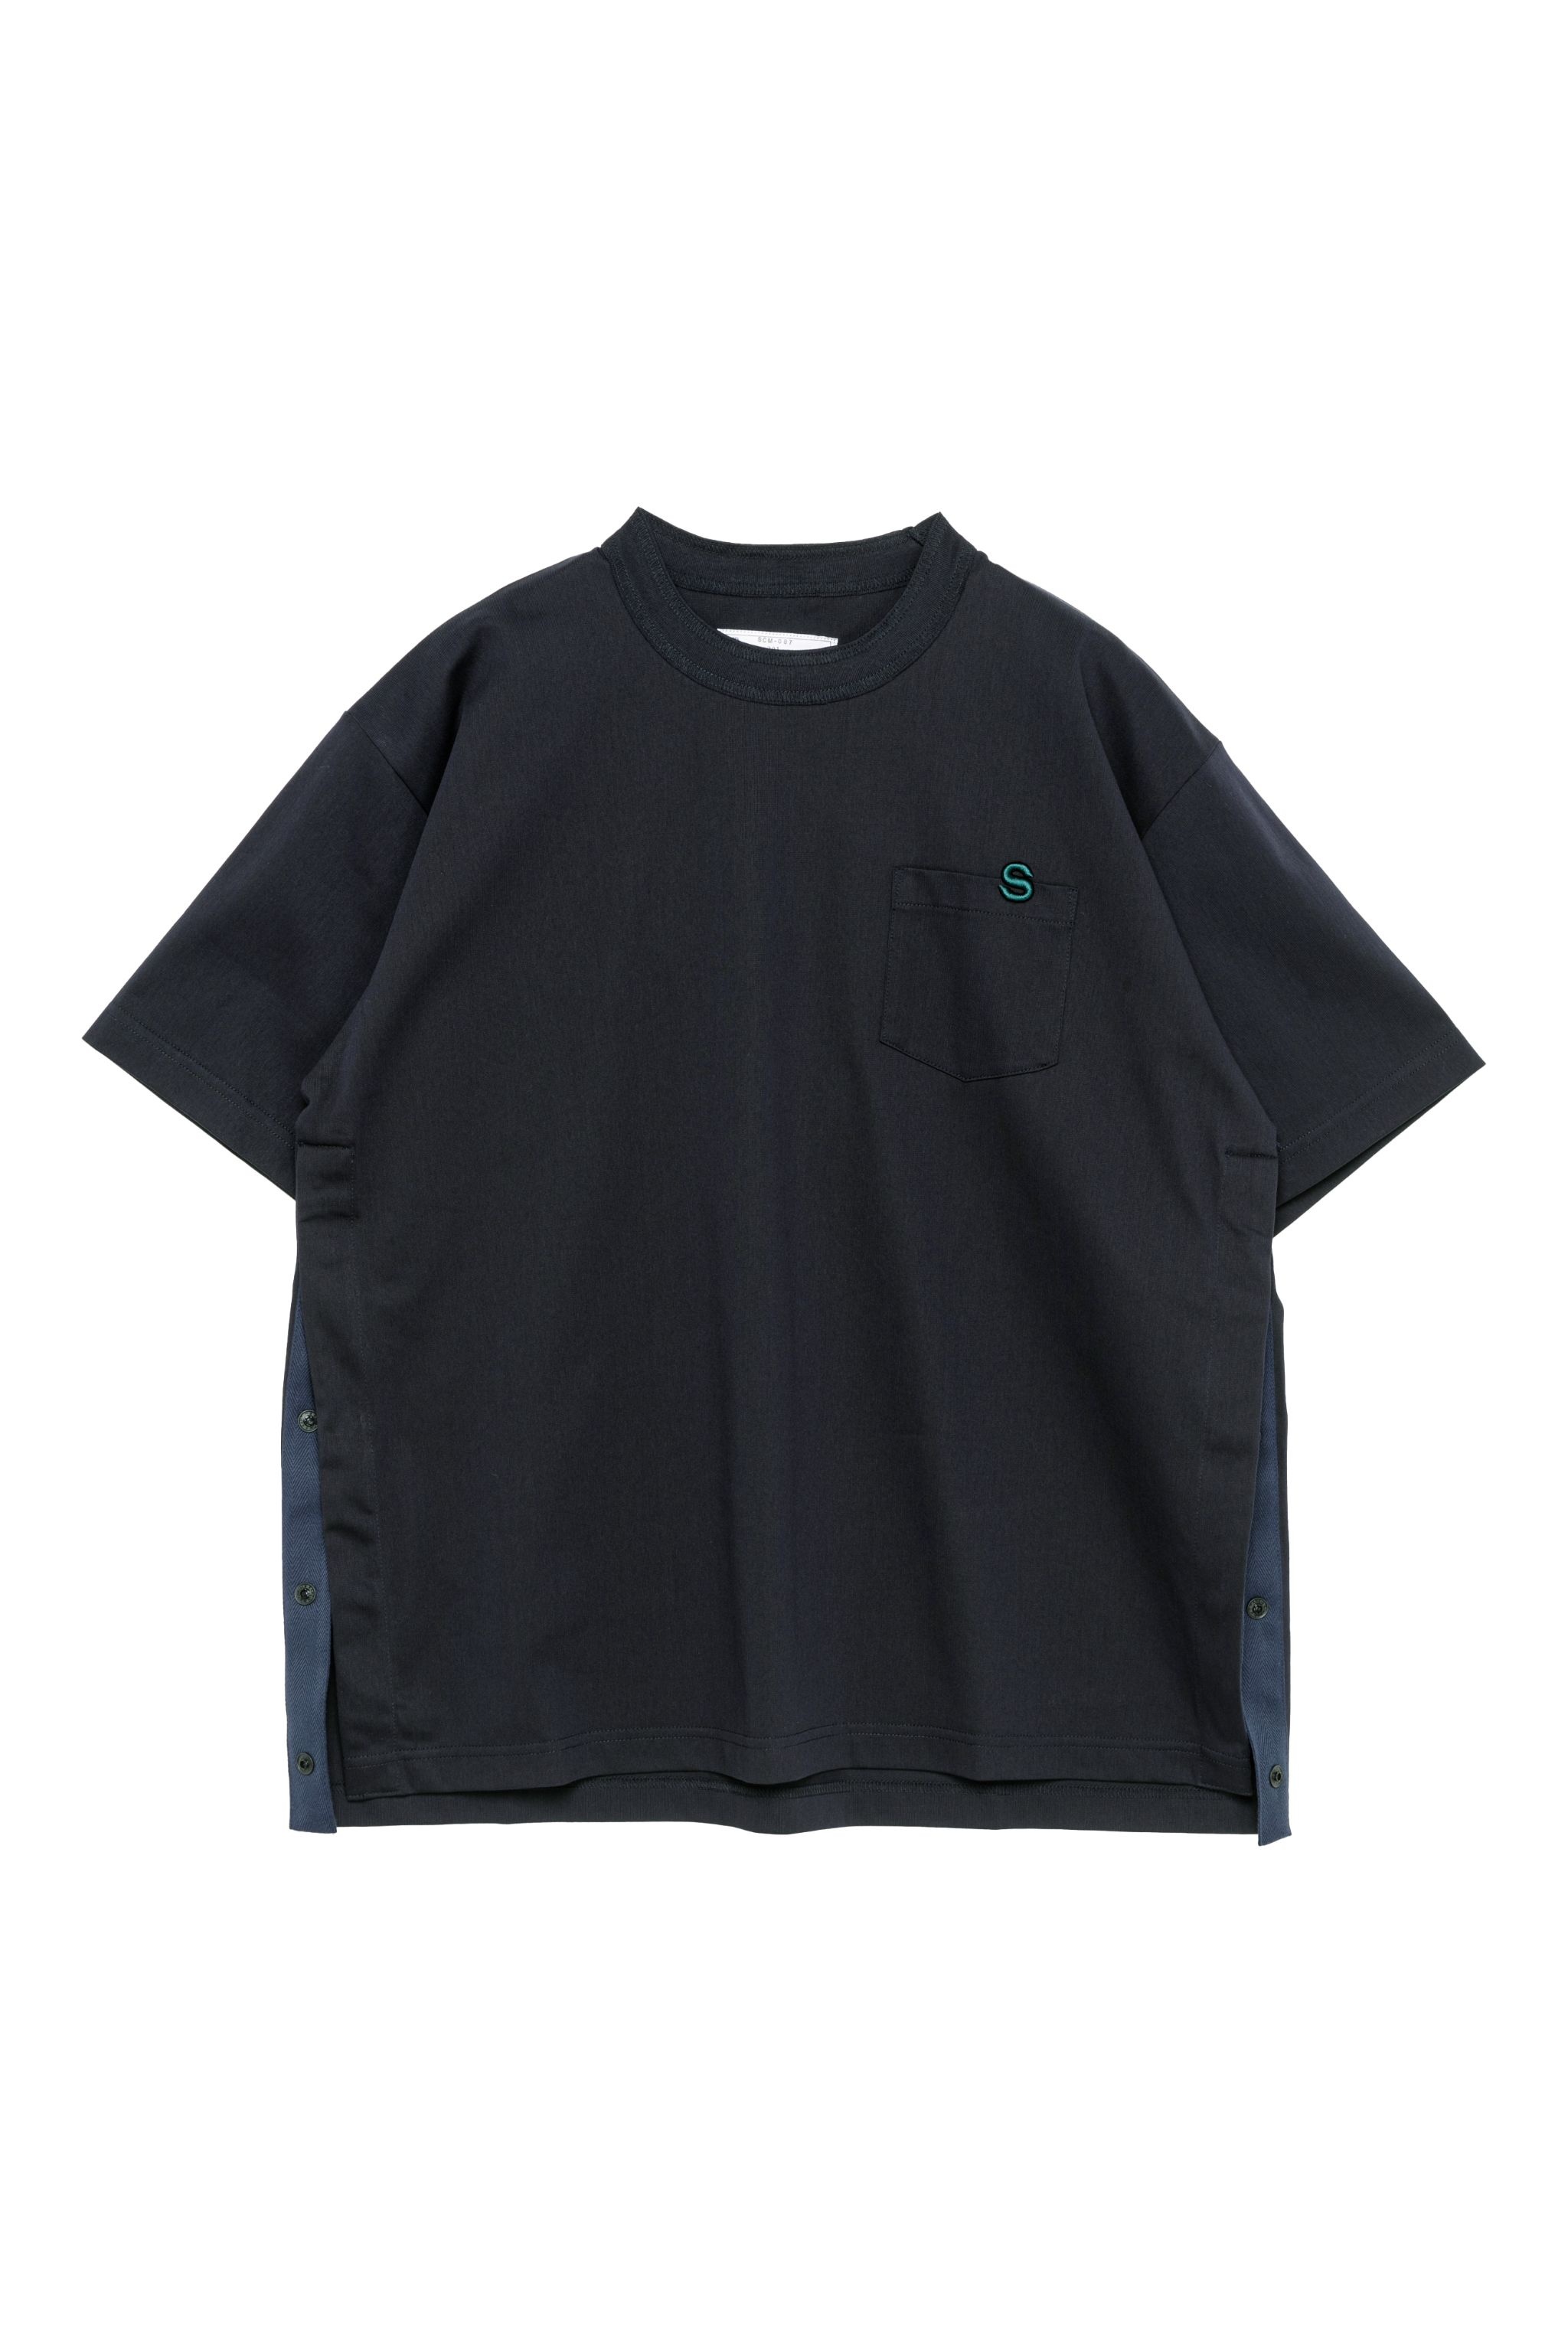 s Cotton Jersey T-Shirt - 3